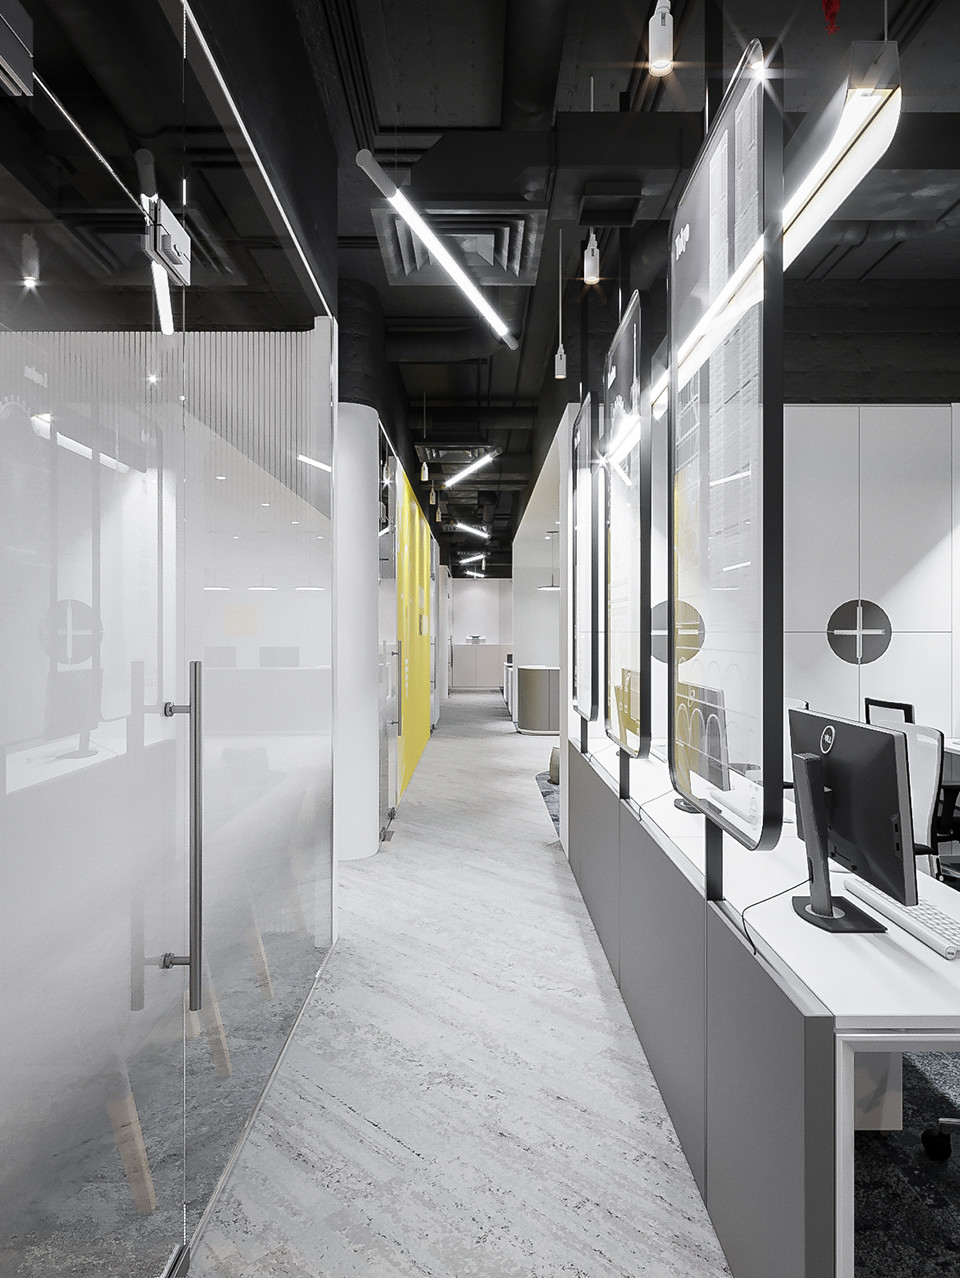 Hành lang văn phòng, sử dụng vách kính để phân chia không gian và đảm bảo riêng tư